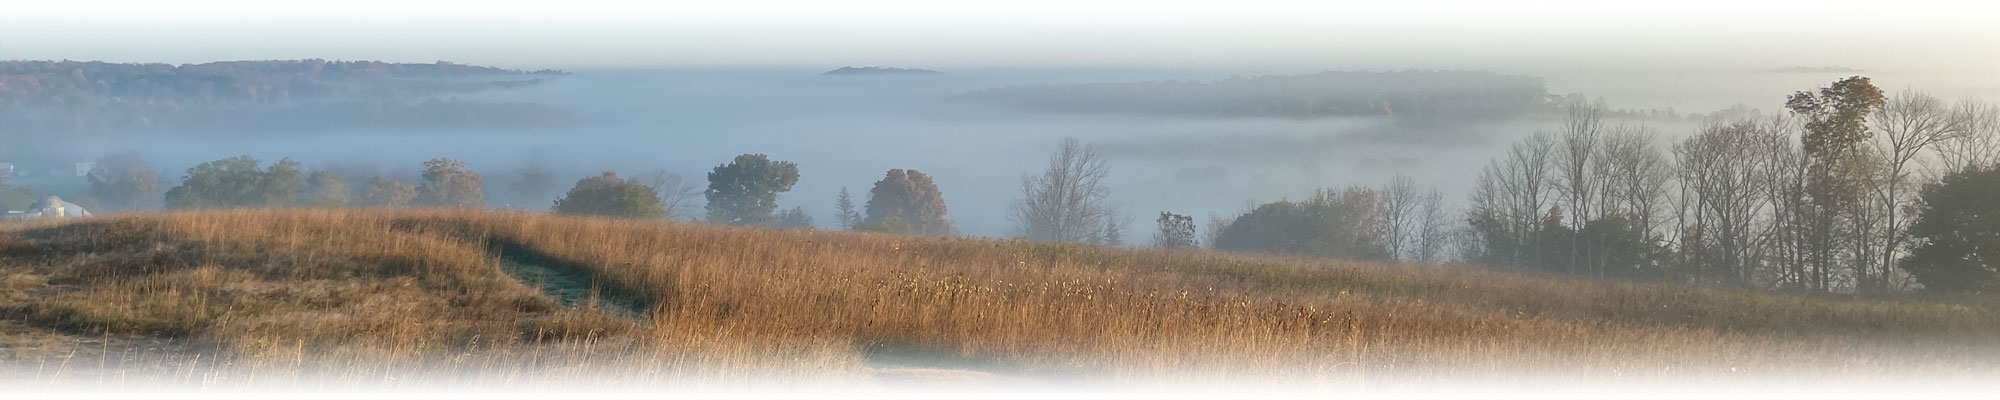 misty morning overlook